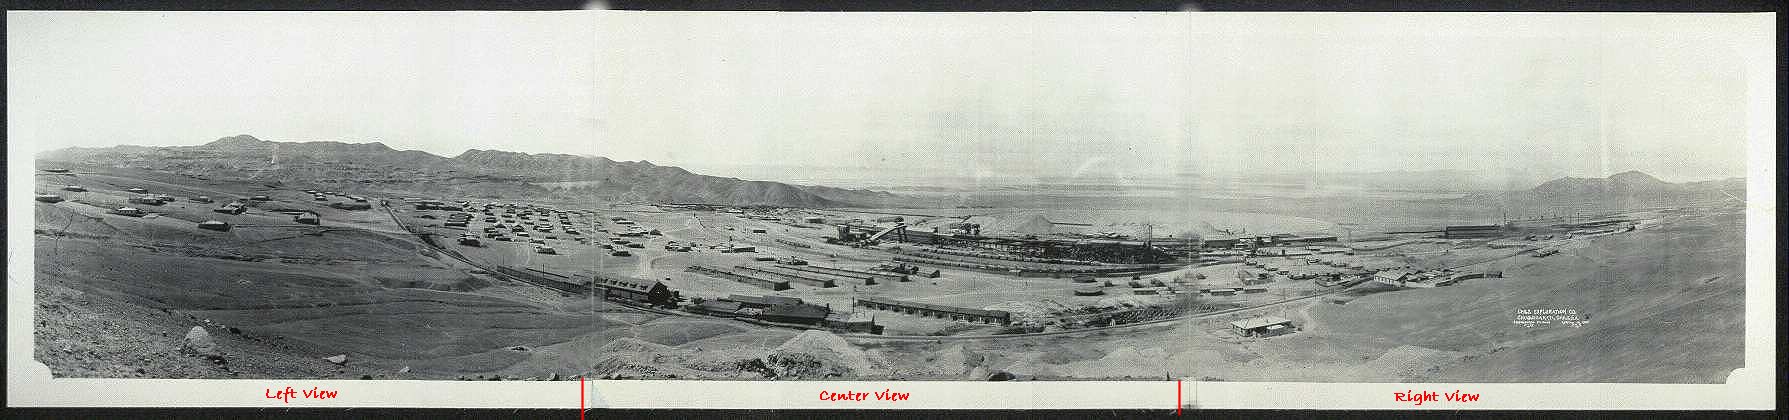 ..//images/panoramic_photograh_taken_in_1929.jpg